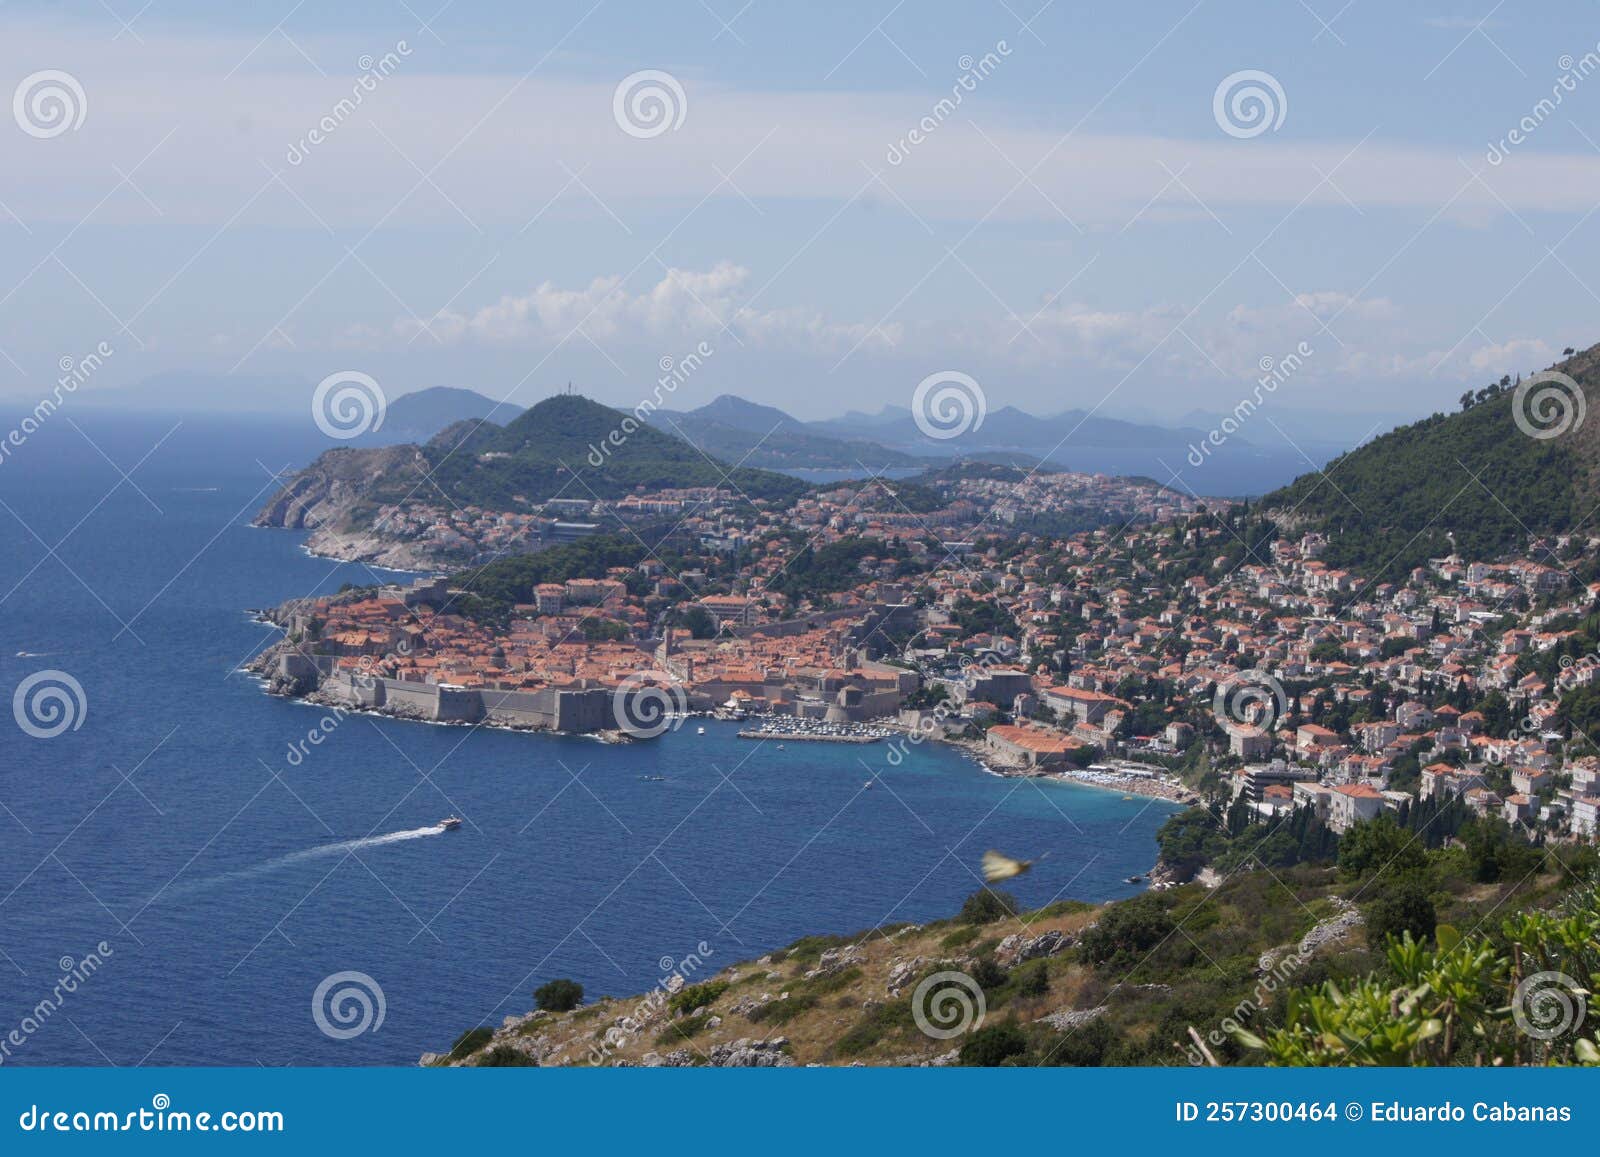 panoramica de la costa de dubrovnik en el mar adriatico